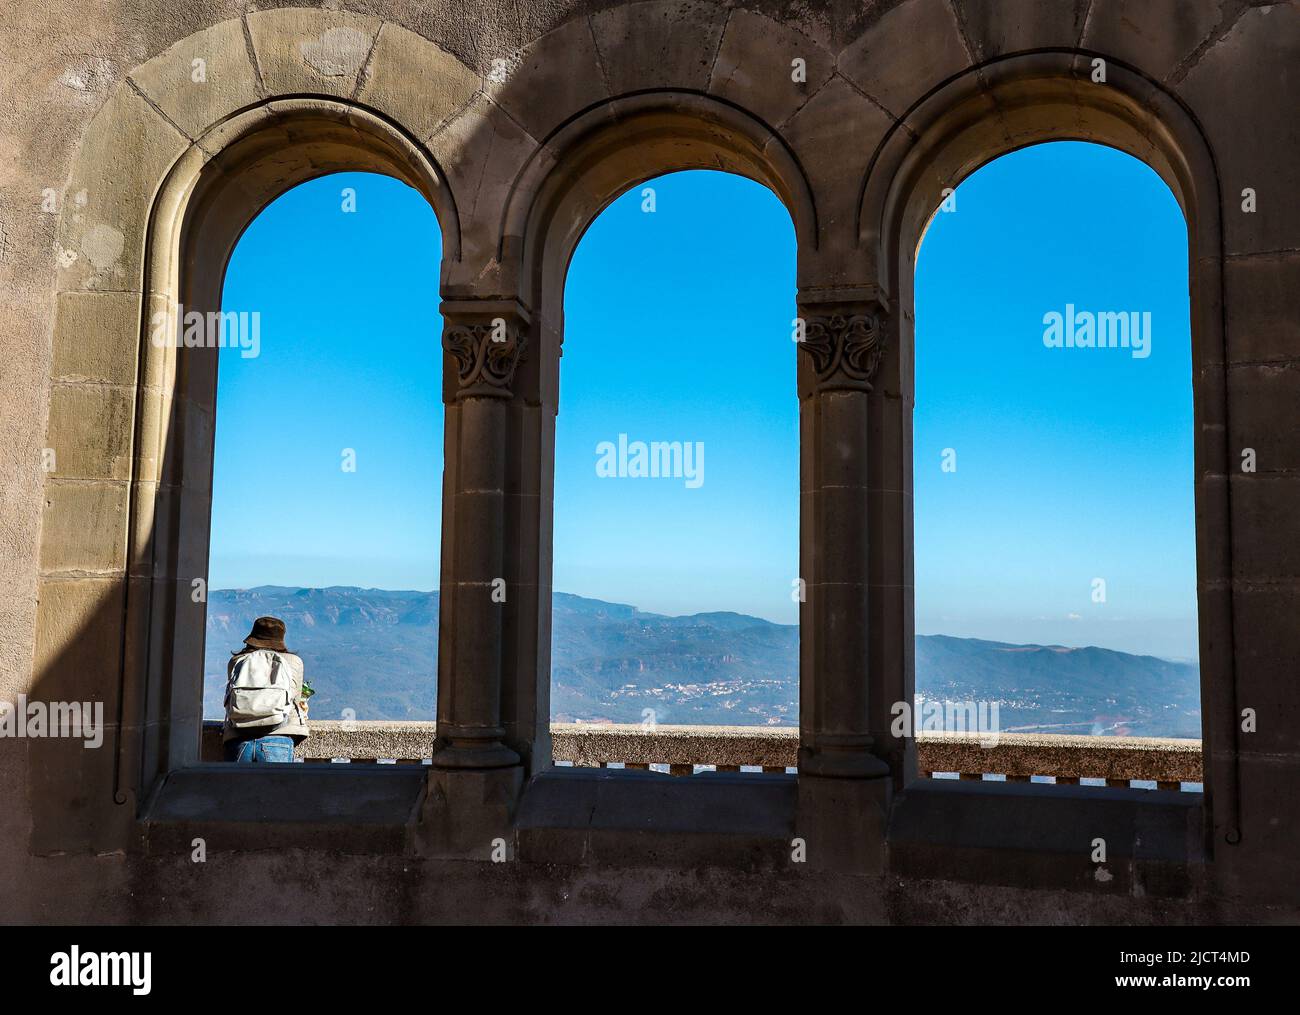 Ventana al aire libre con una persona en Montserrat. El Girl Traveler disfruta de las vistas panorámicas de Cataluña. Foto de stock